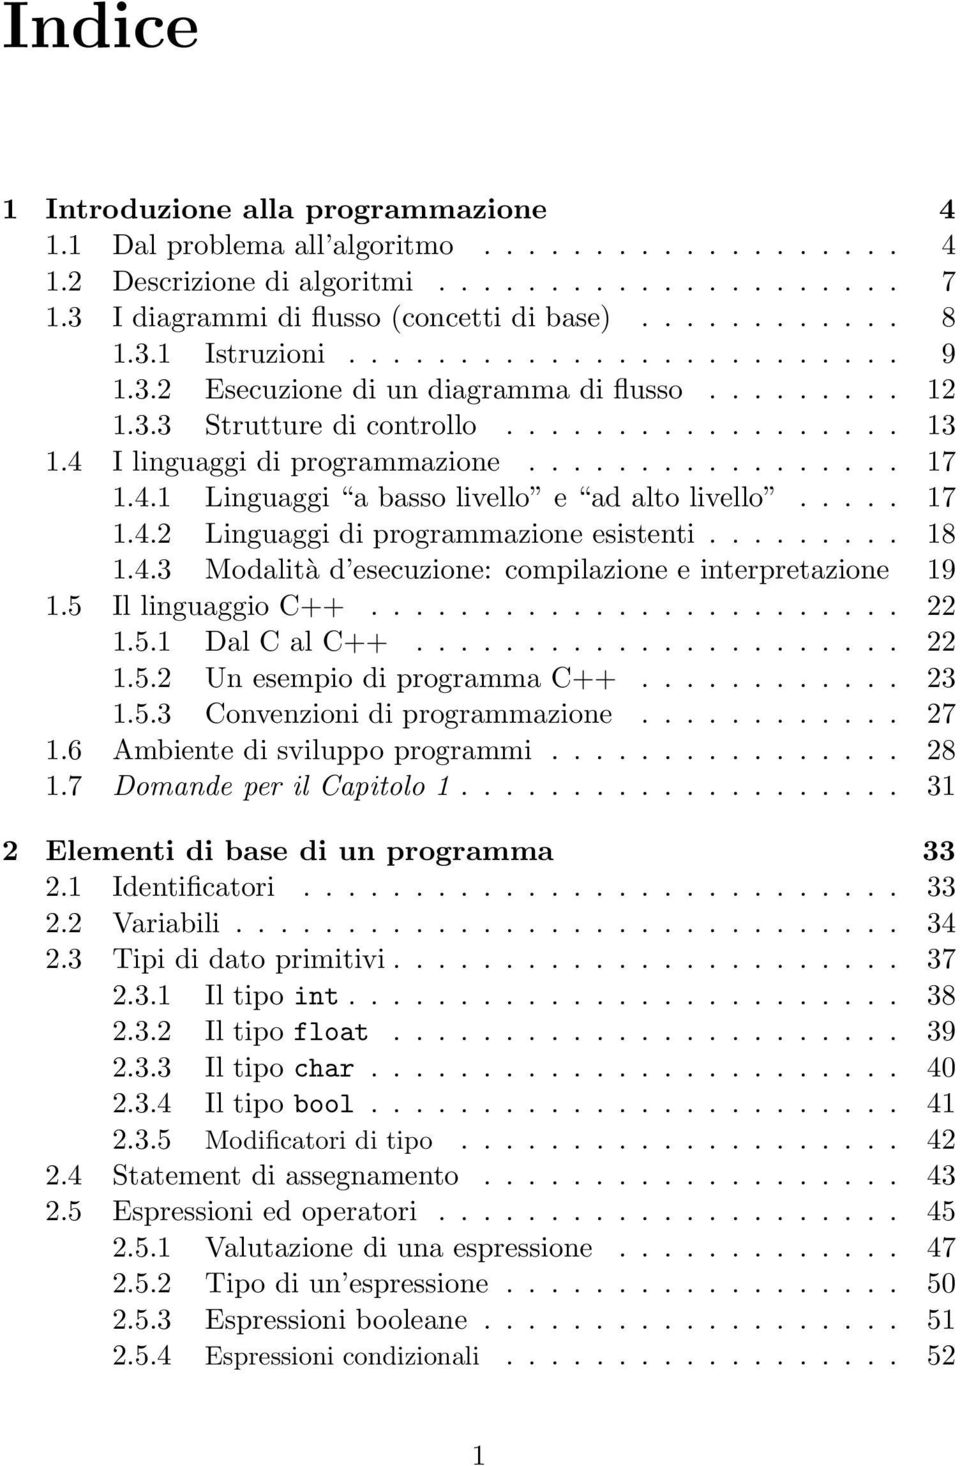 4.1 Linguaggi a basso livello e ad alto livello..... 17 1.4.2 Linguaggi di programmazione esistenti......... 18 1.4.3 Modalità d esecuzione: compilazione e interpretazione 19 1.5 Il linguaggio C++.